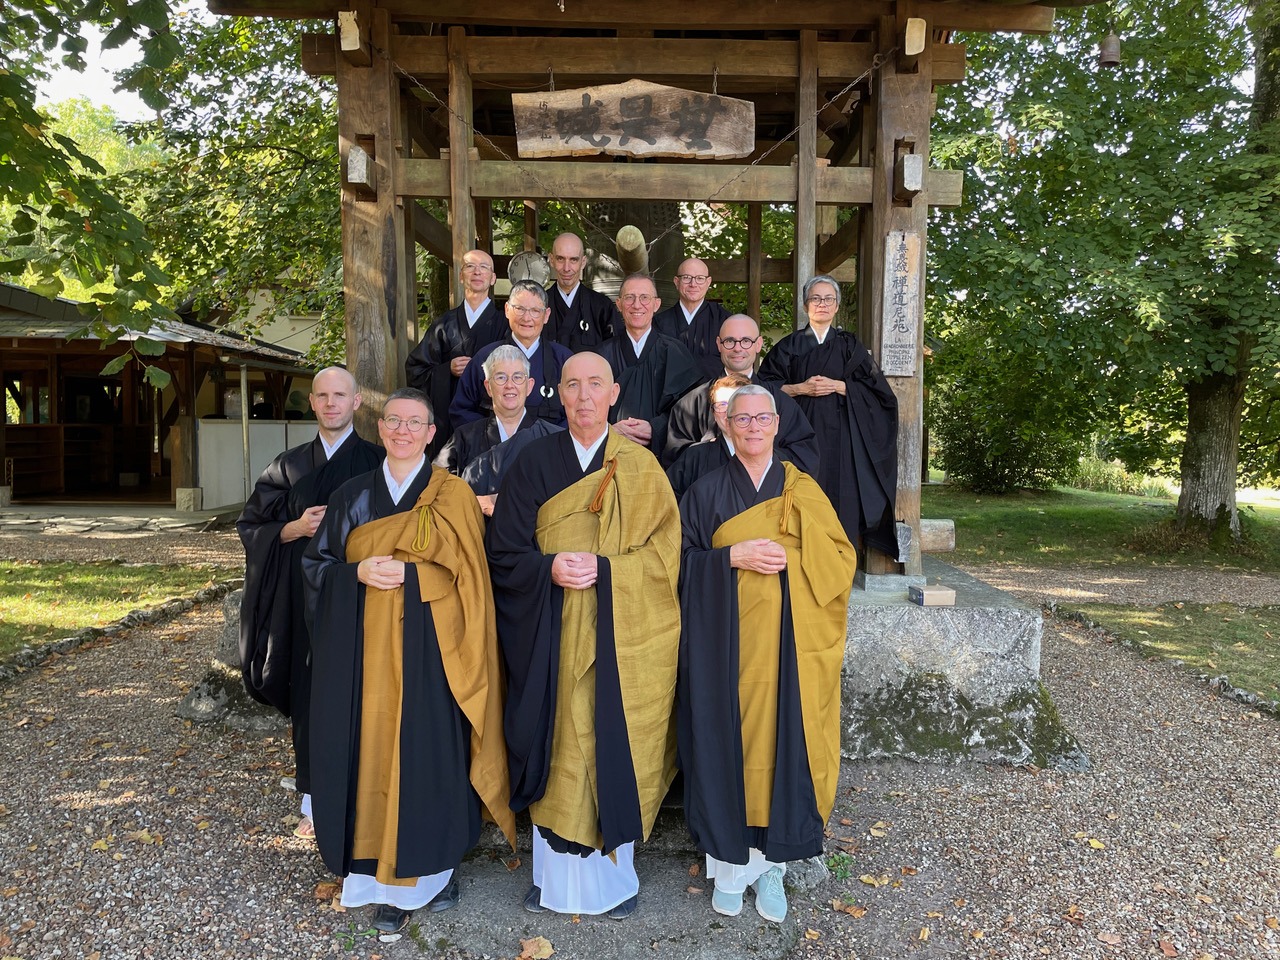 cérémonies commémoratives préliminaires pour le 700e anniversaire du fondateur du temple Daihonzan Sojiji, Keizan Jokin Zenji, au temple de la Gendronnière